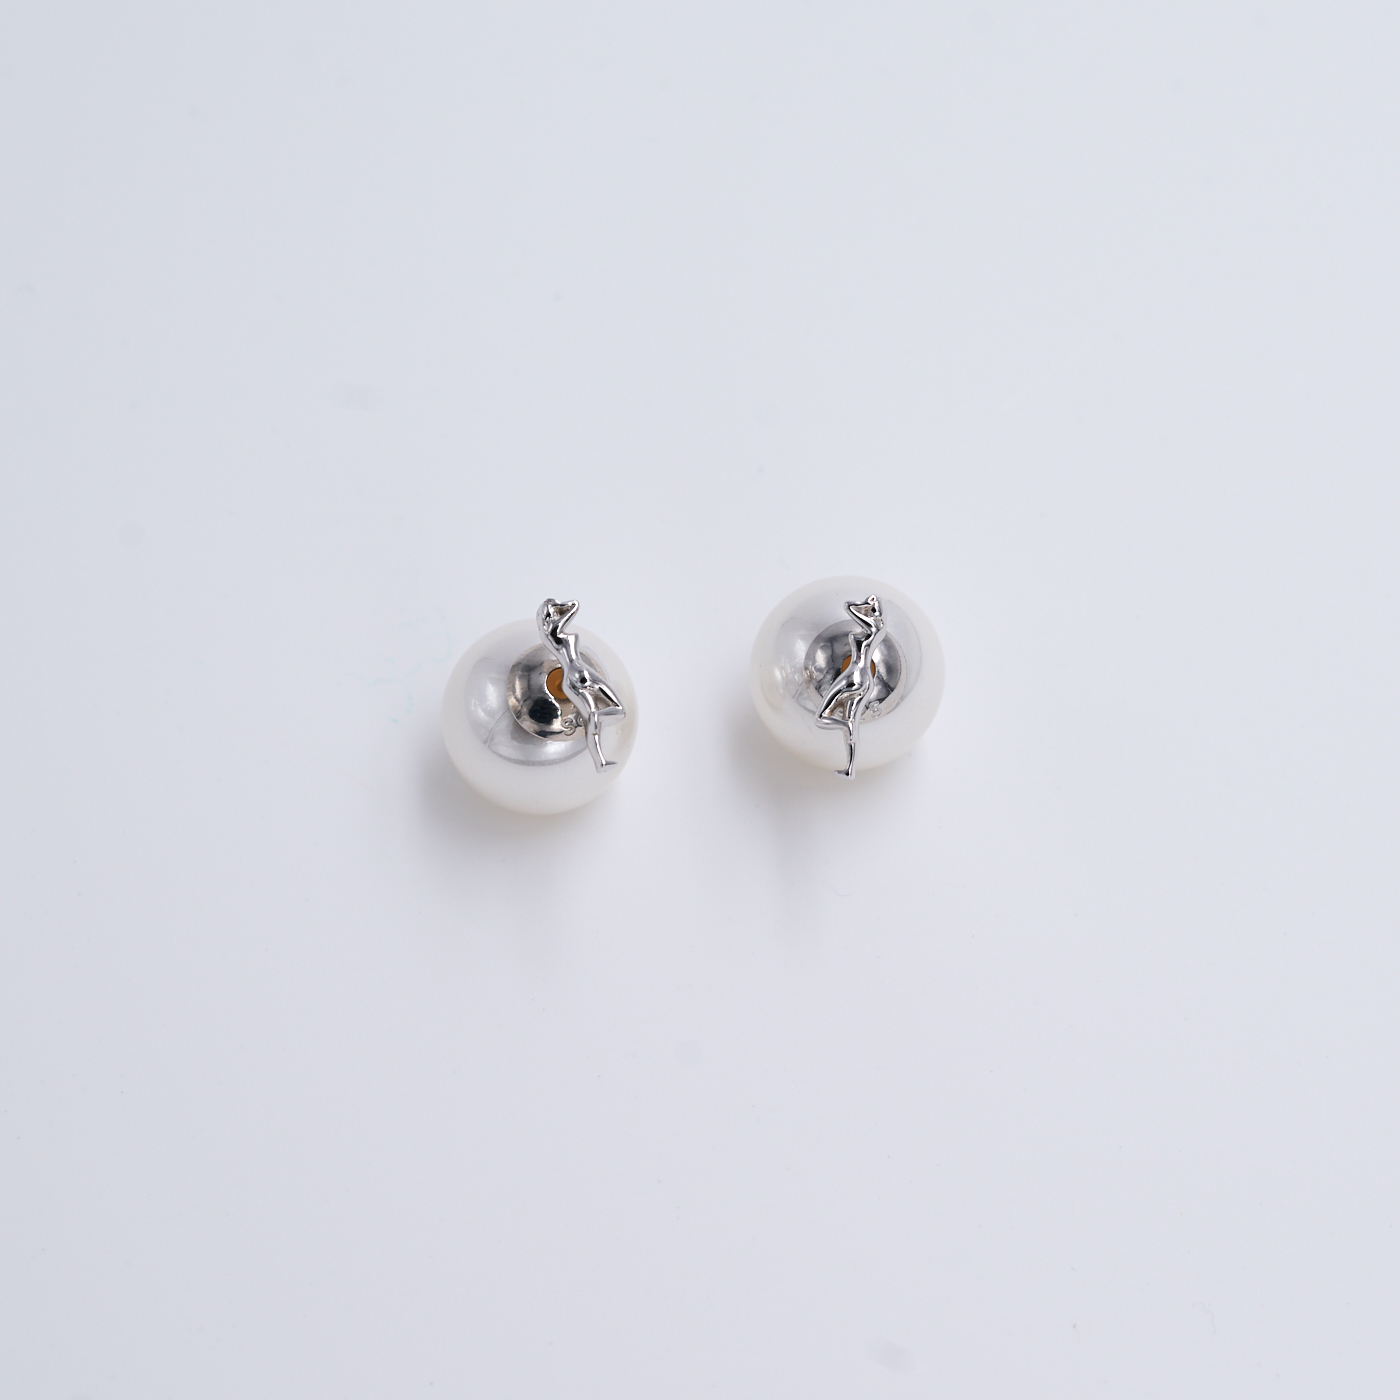 常玉藝術珠寶系列-美艷珍珠耳環